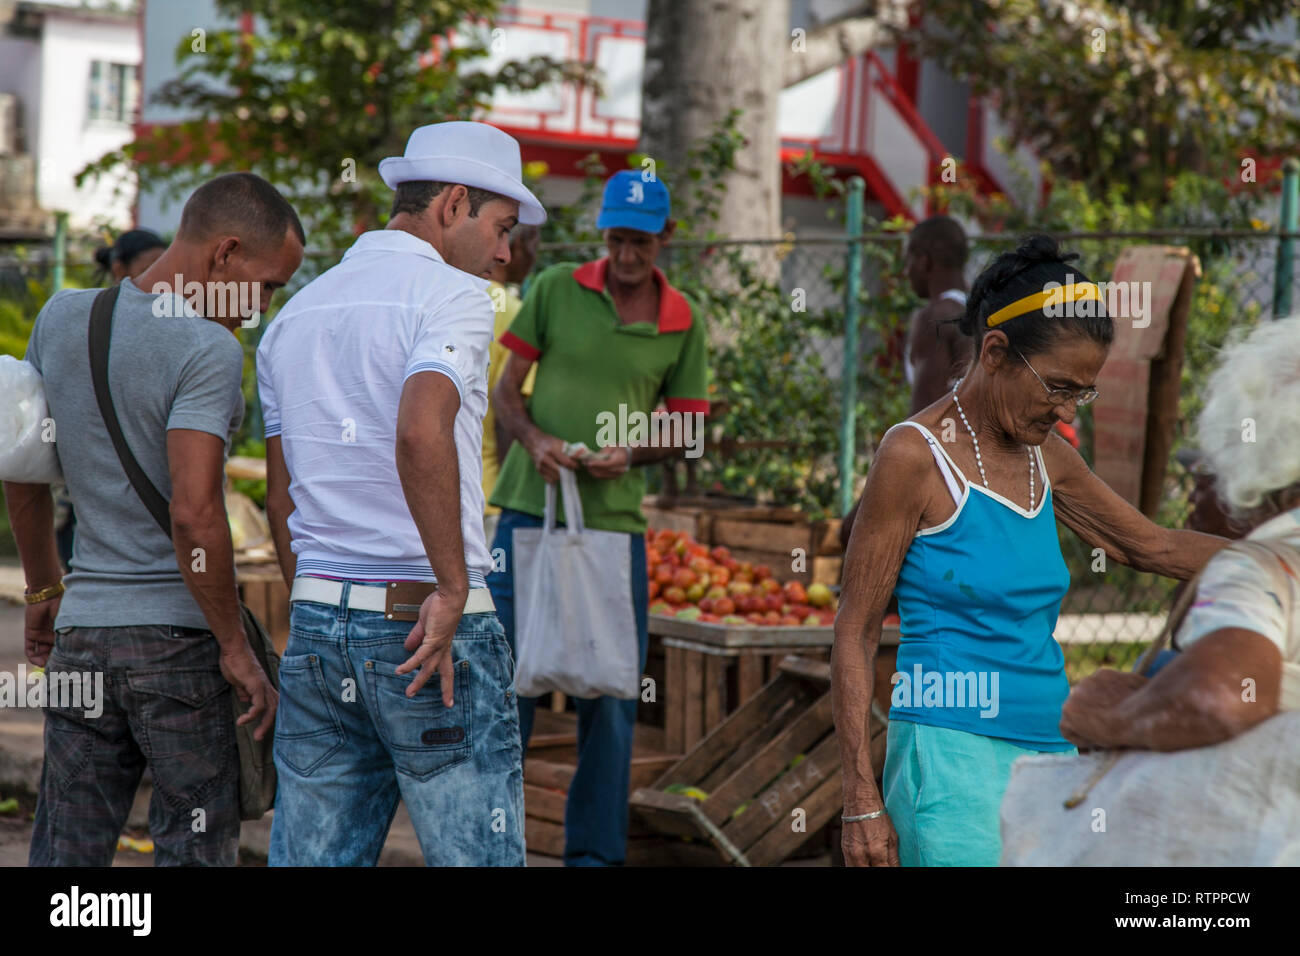 L'Avana, Cuba - 12 Gennaio 2013: una vista delle strade della città con il popolo cubano. La gente acquista presso un fruttivendolo. Foto Stock